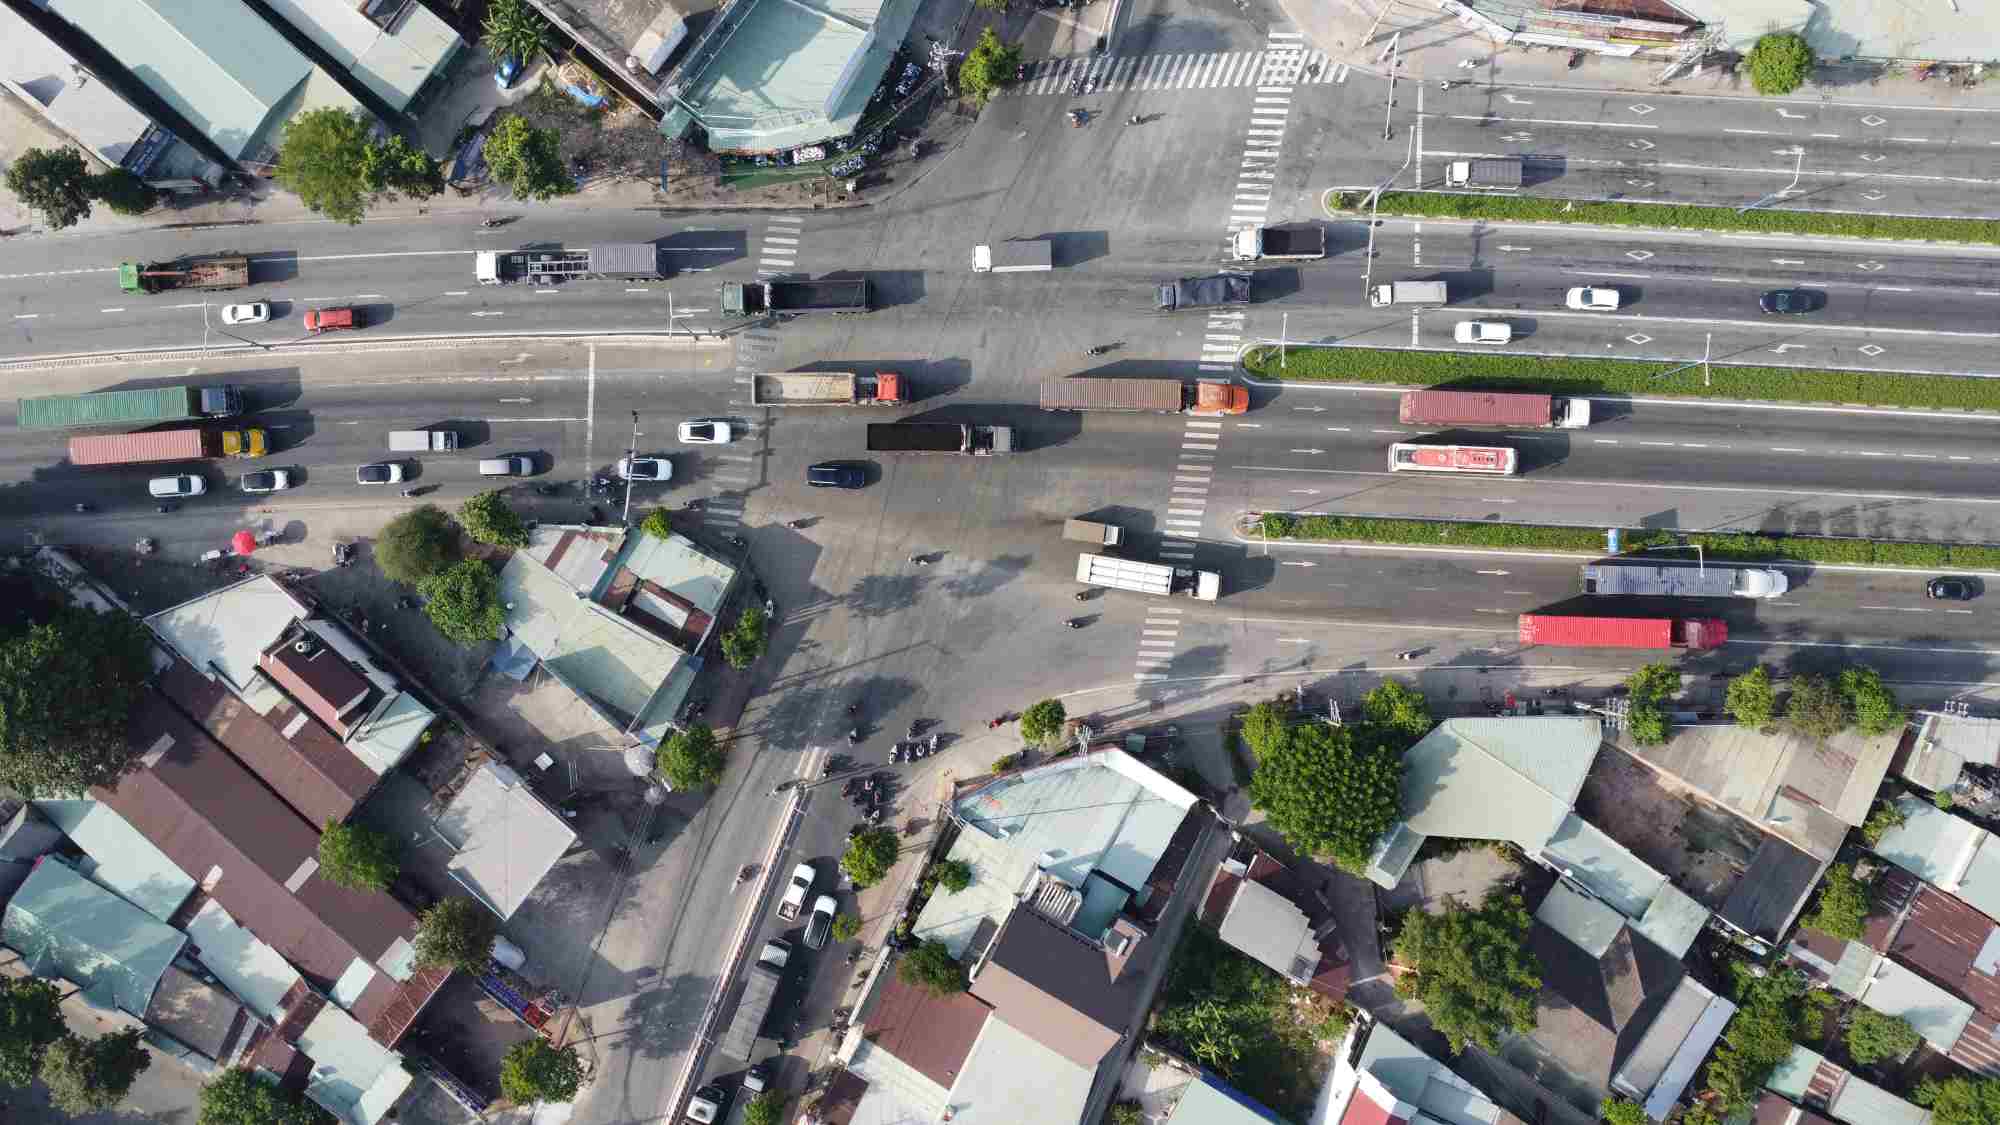 Đây là một trong những ngã tư có mật độ phương tiện lưu thông lớn nhất và phức tạp nhất ở tỉnh Bình Dương hiện nay.